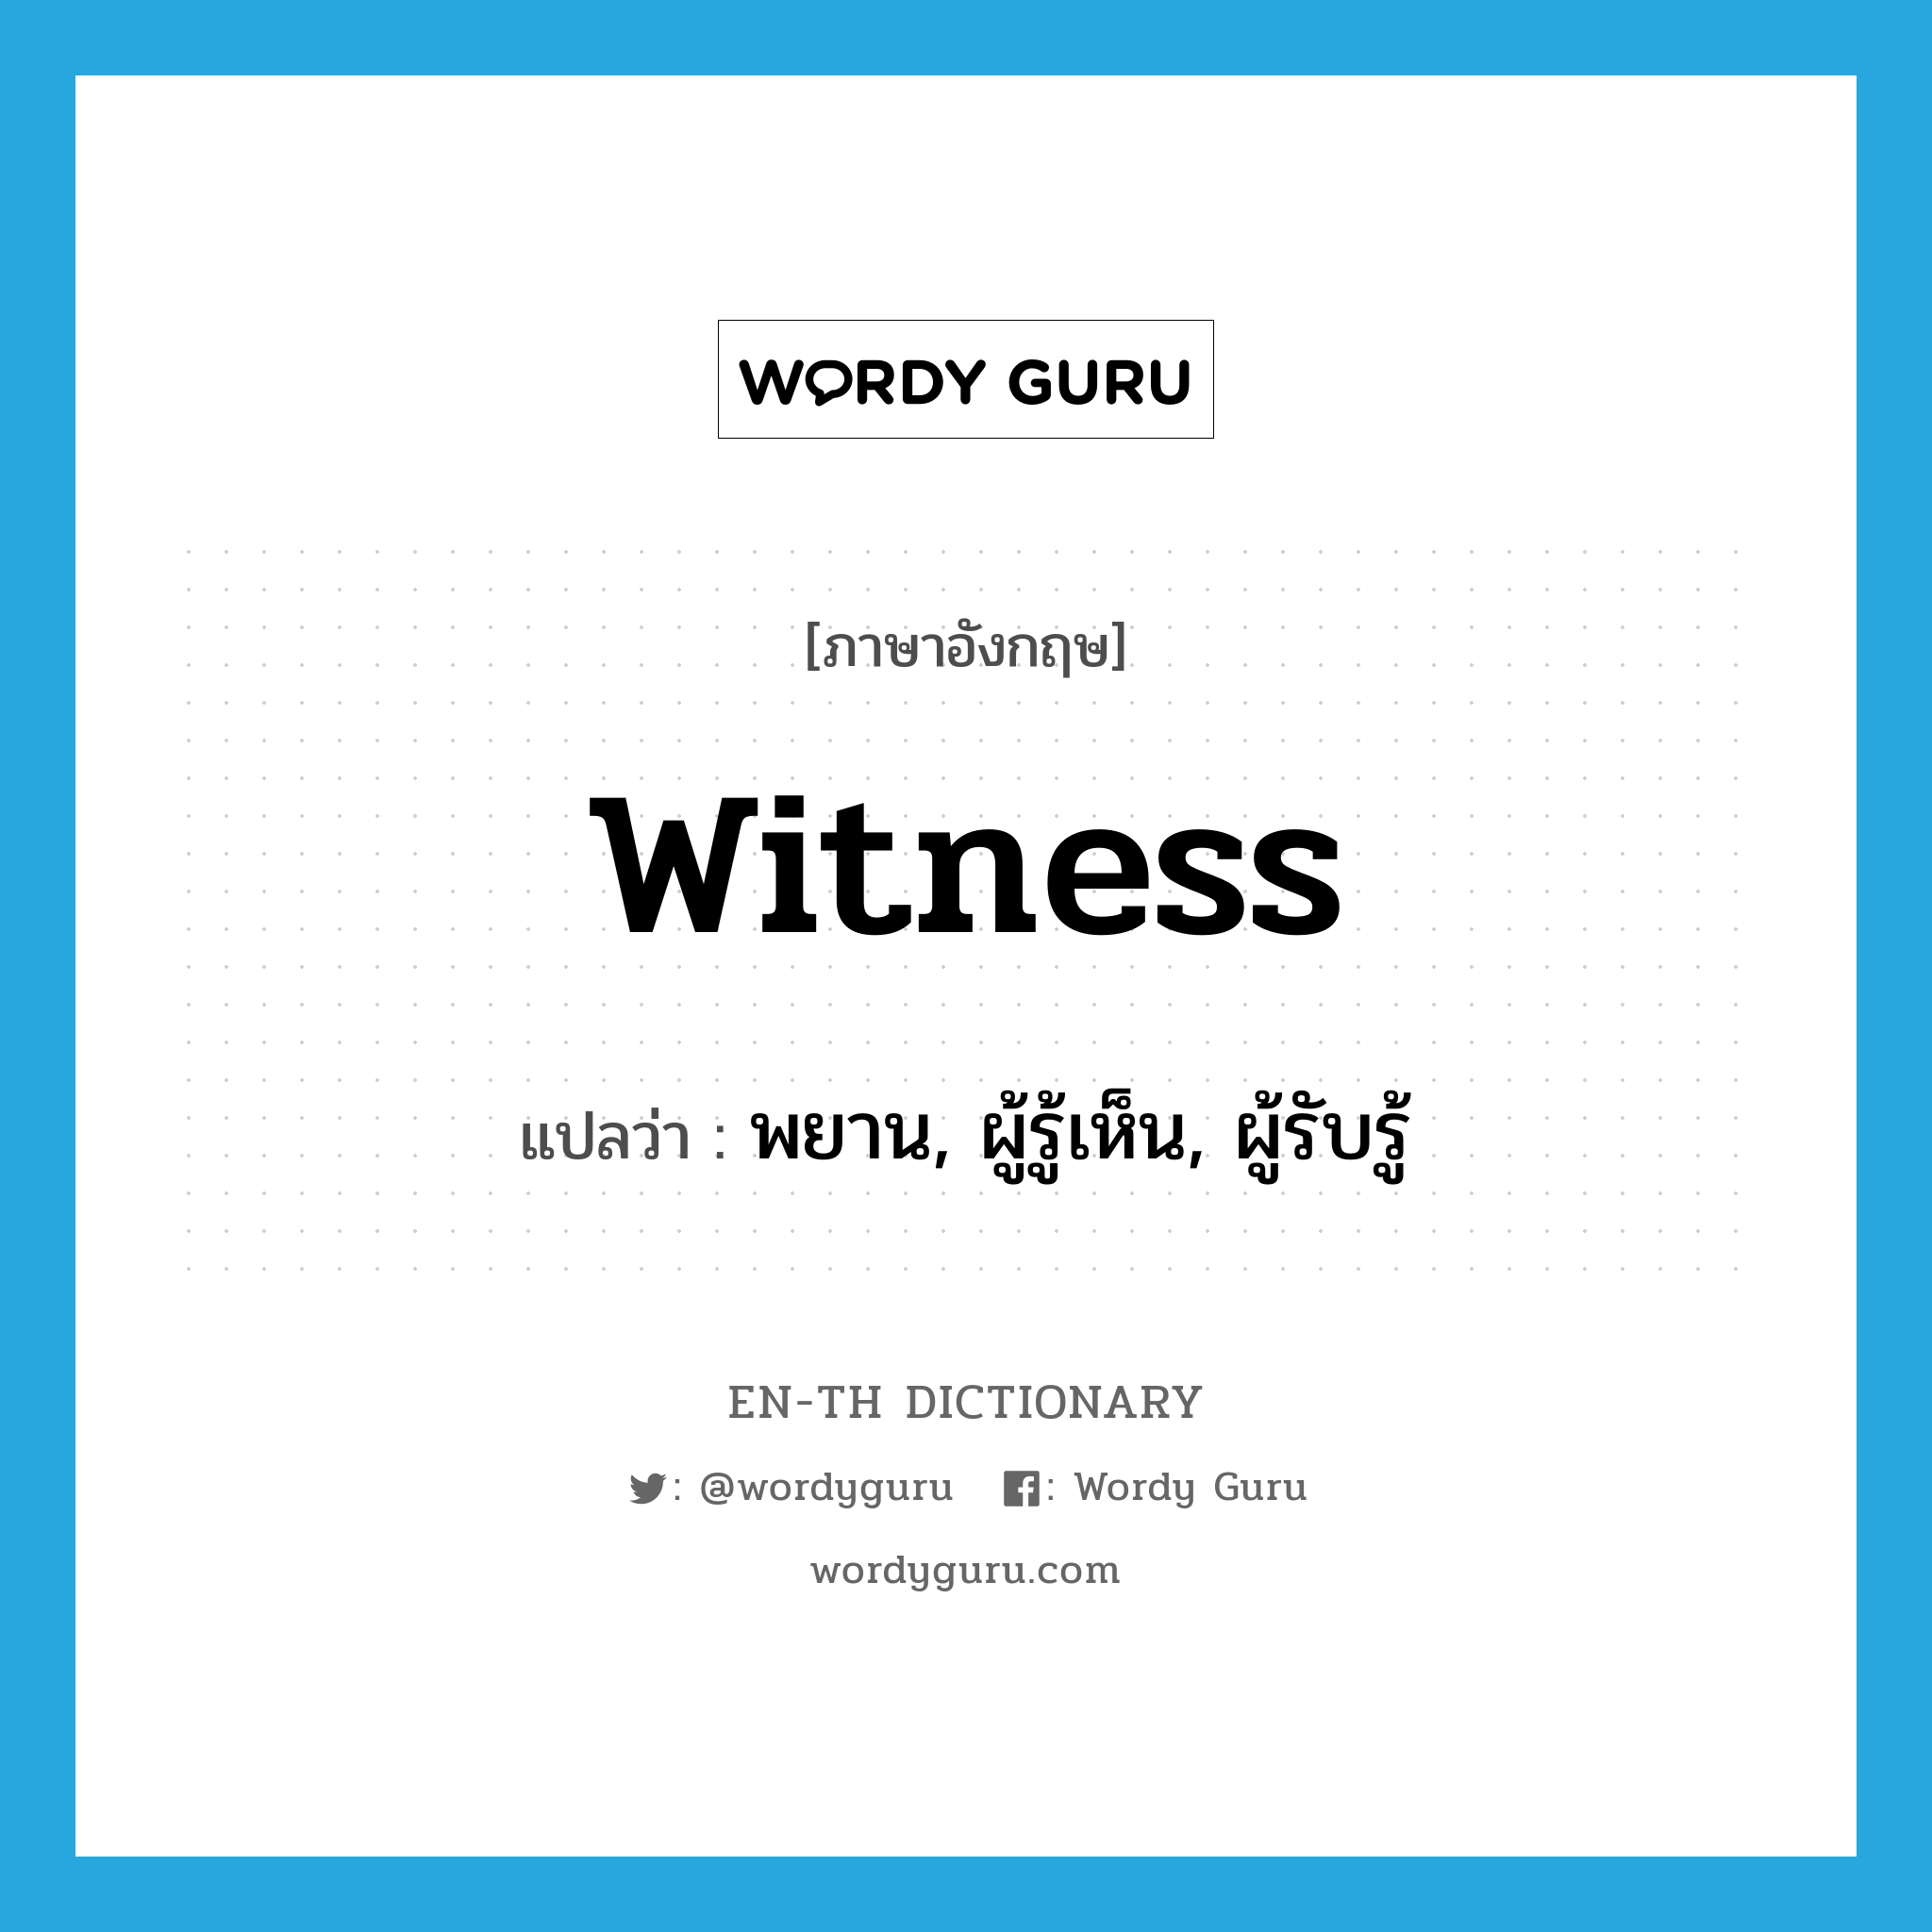 พยาน, ผู้รู้เห็น, ผู้รับรู้ ภาษาอังกฤษ?, คำศัพท์ภาษาอังกฤษ พยาน, ผู้รู้เห็น, ผู้รับรู้ แปลว่า witness ประเภท N หมวด N